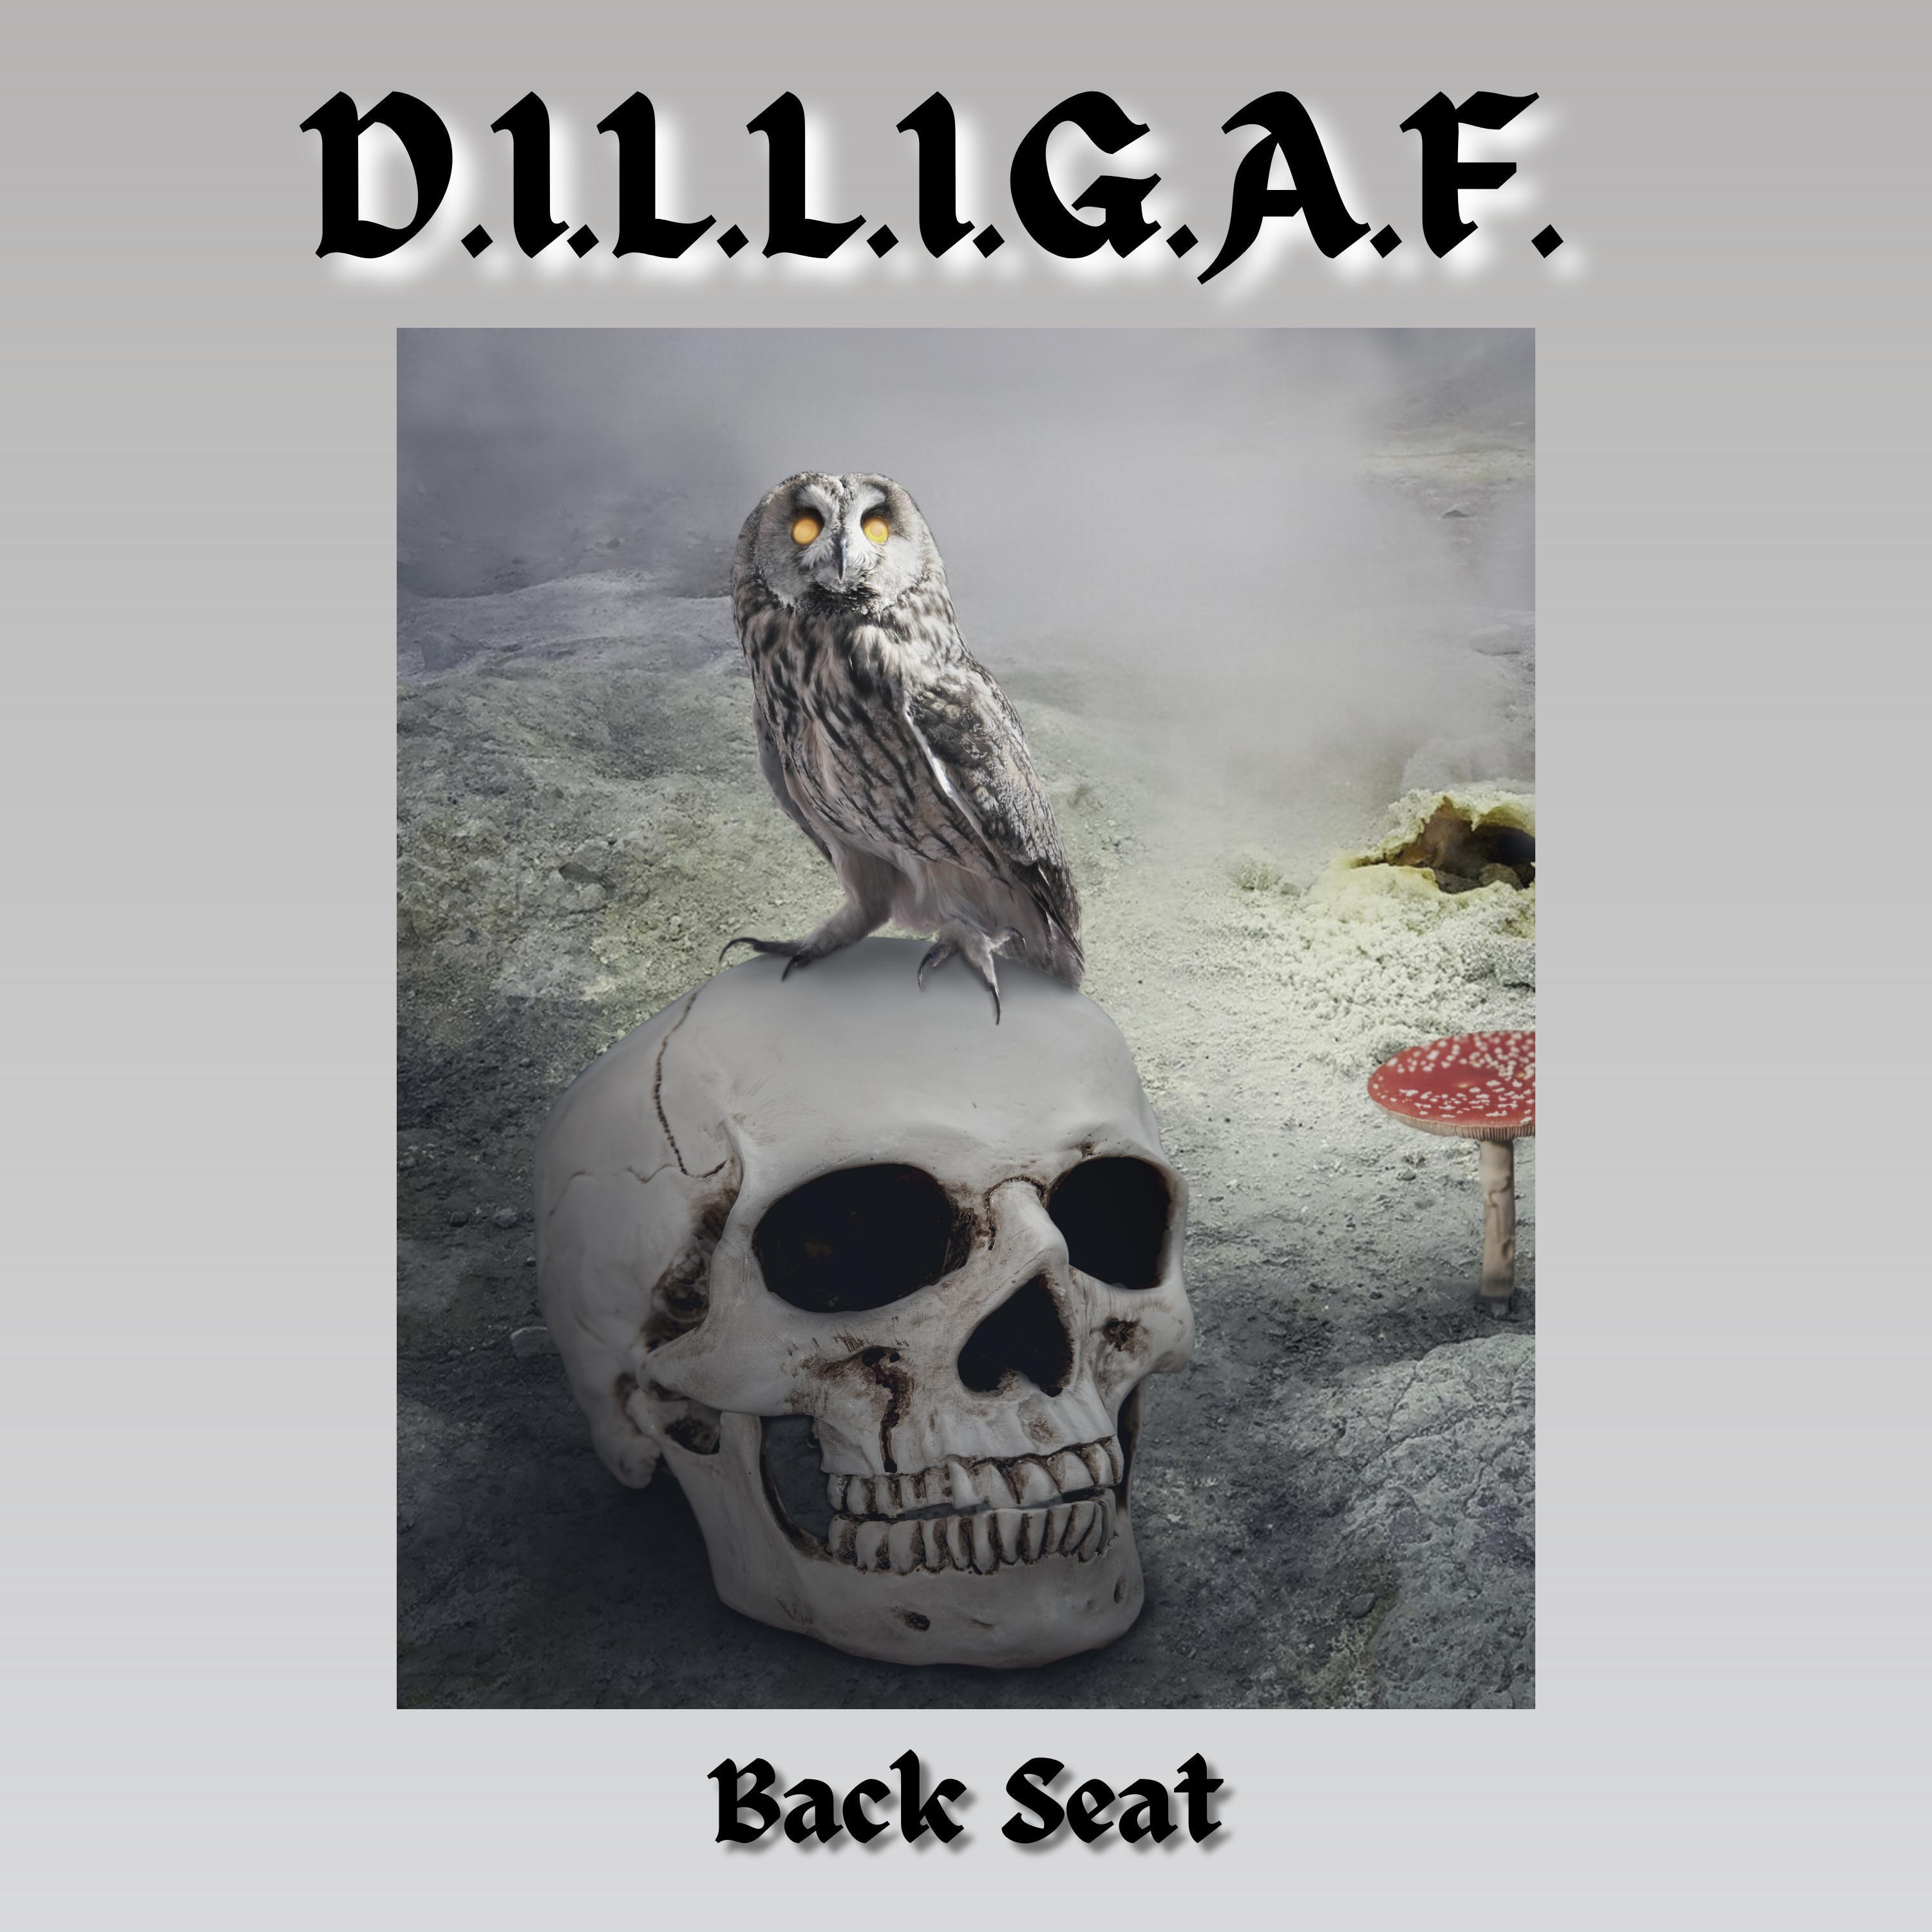 D.I.L.L.I.G.A.F. - Back Seat